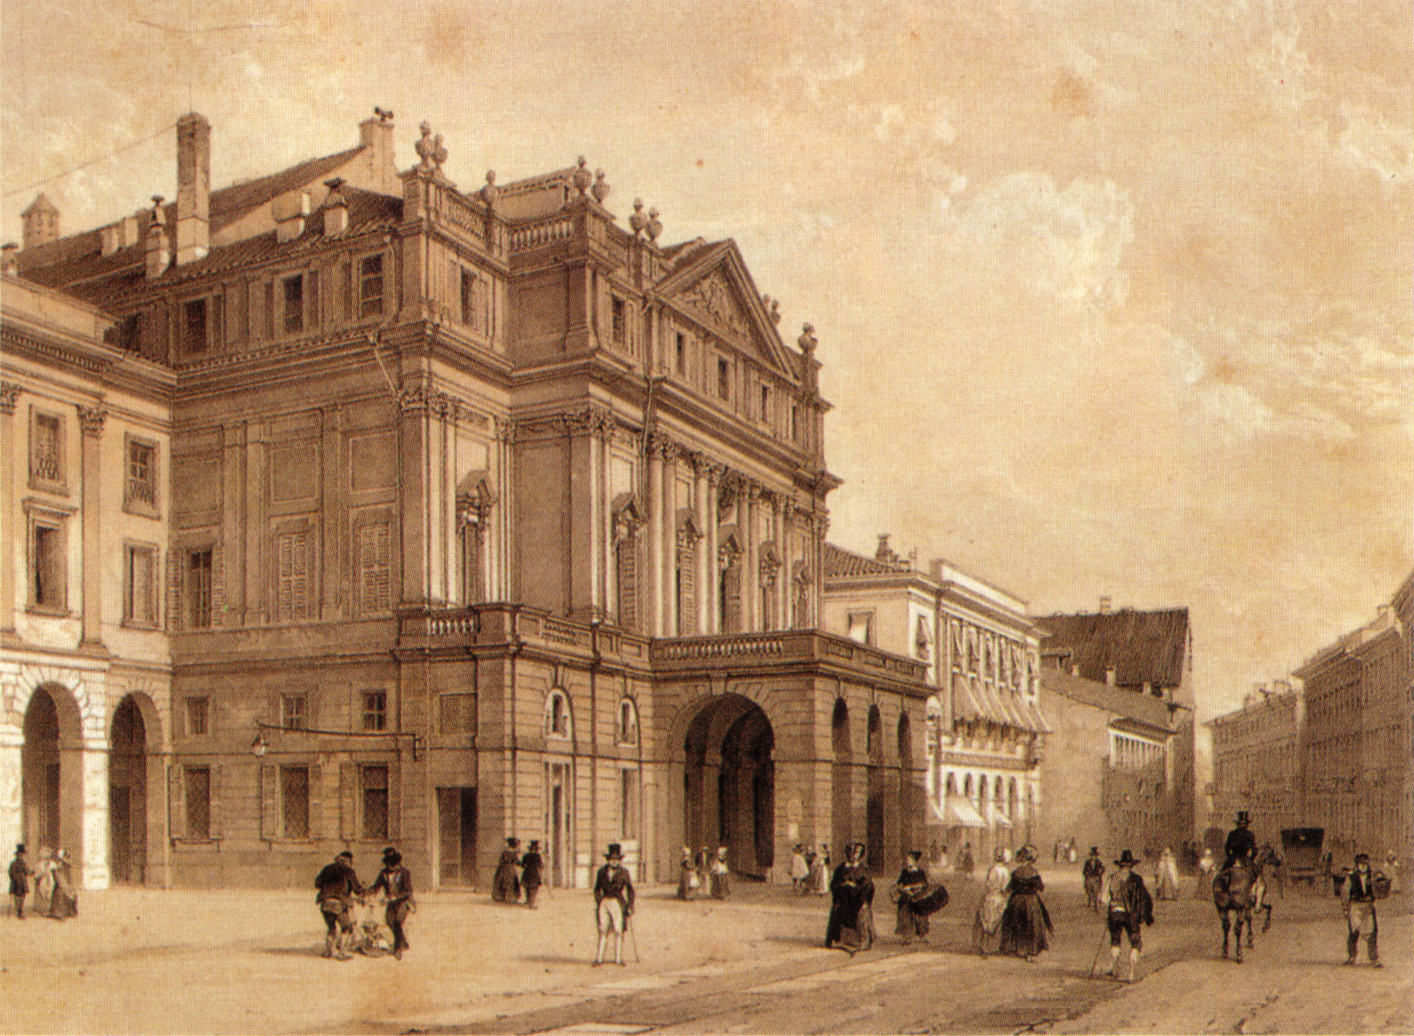 Inaugurazione Teatro alla Scala